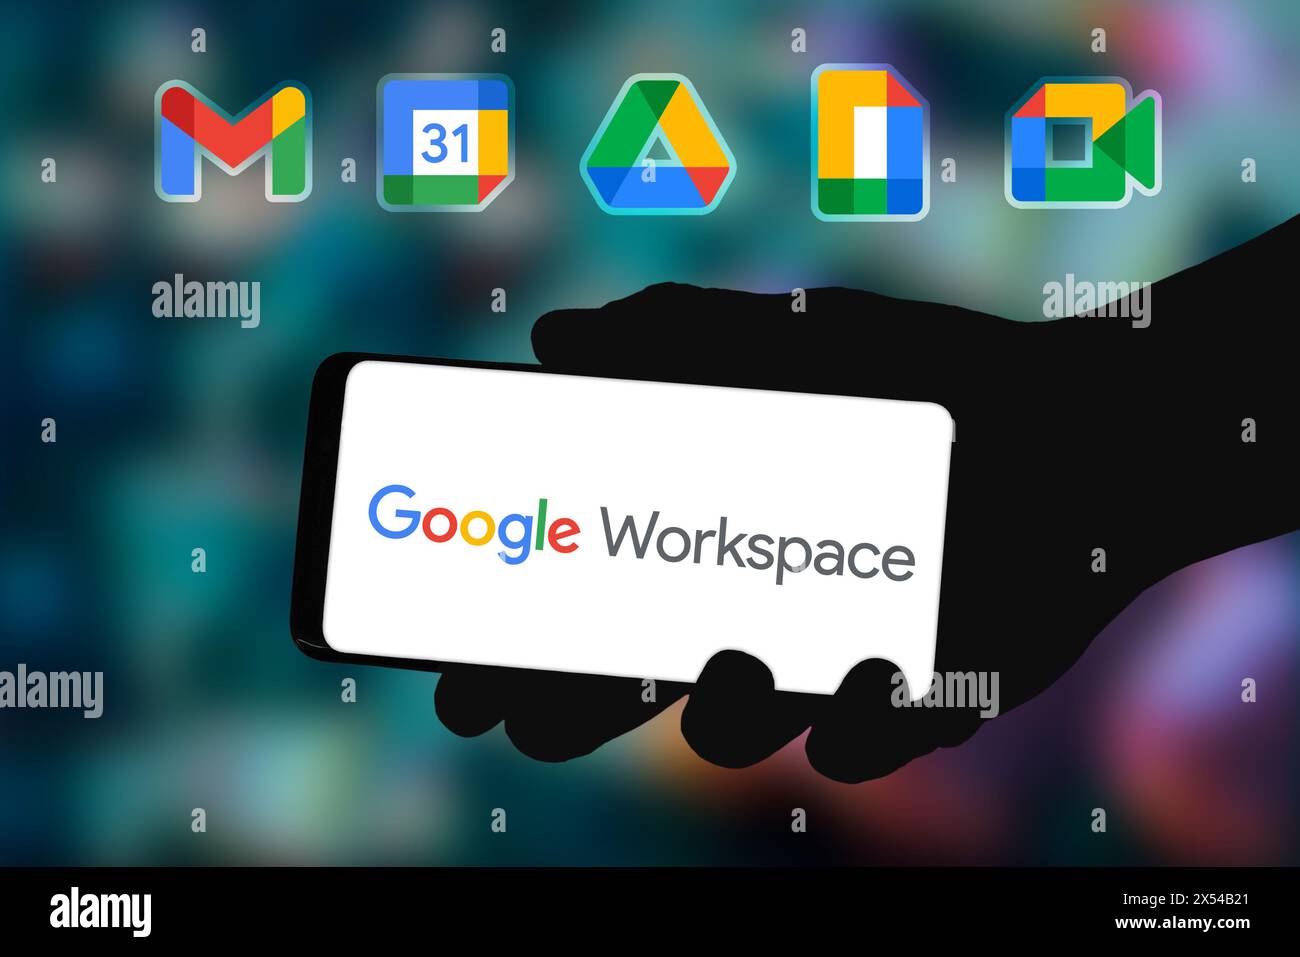 Google Workspace affiché sur le smartphone Banque D'Images